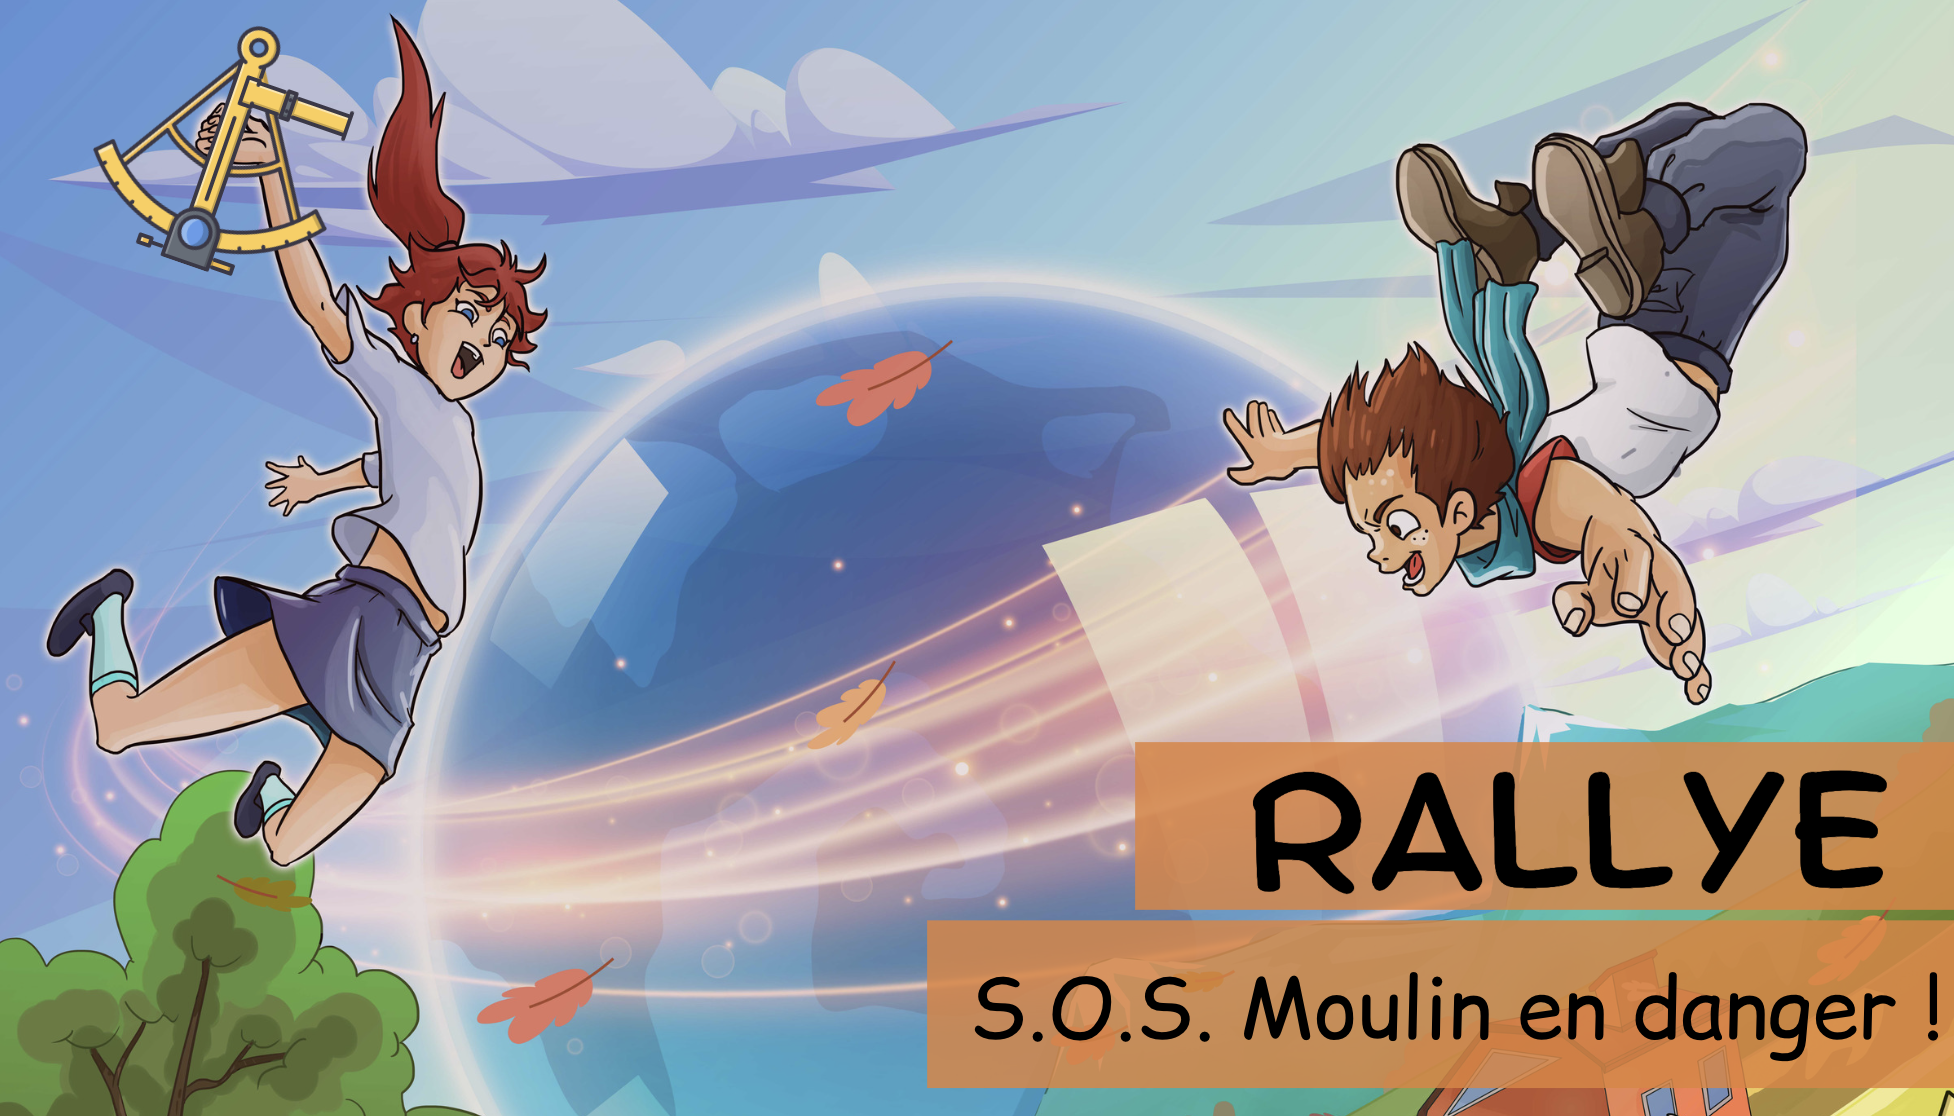 Rallye S.O.S Moulin en danger!